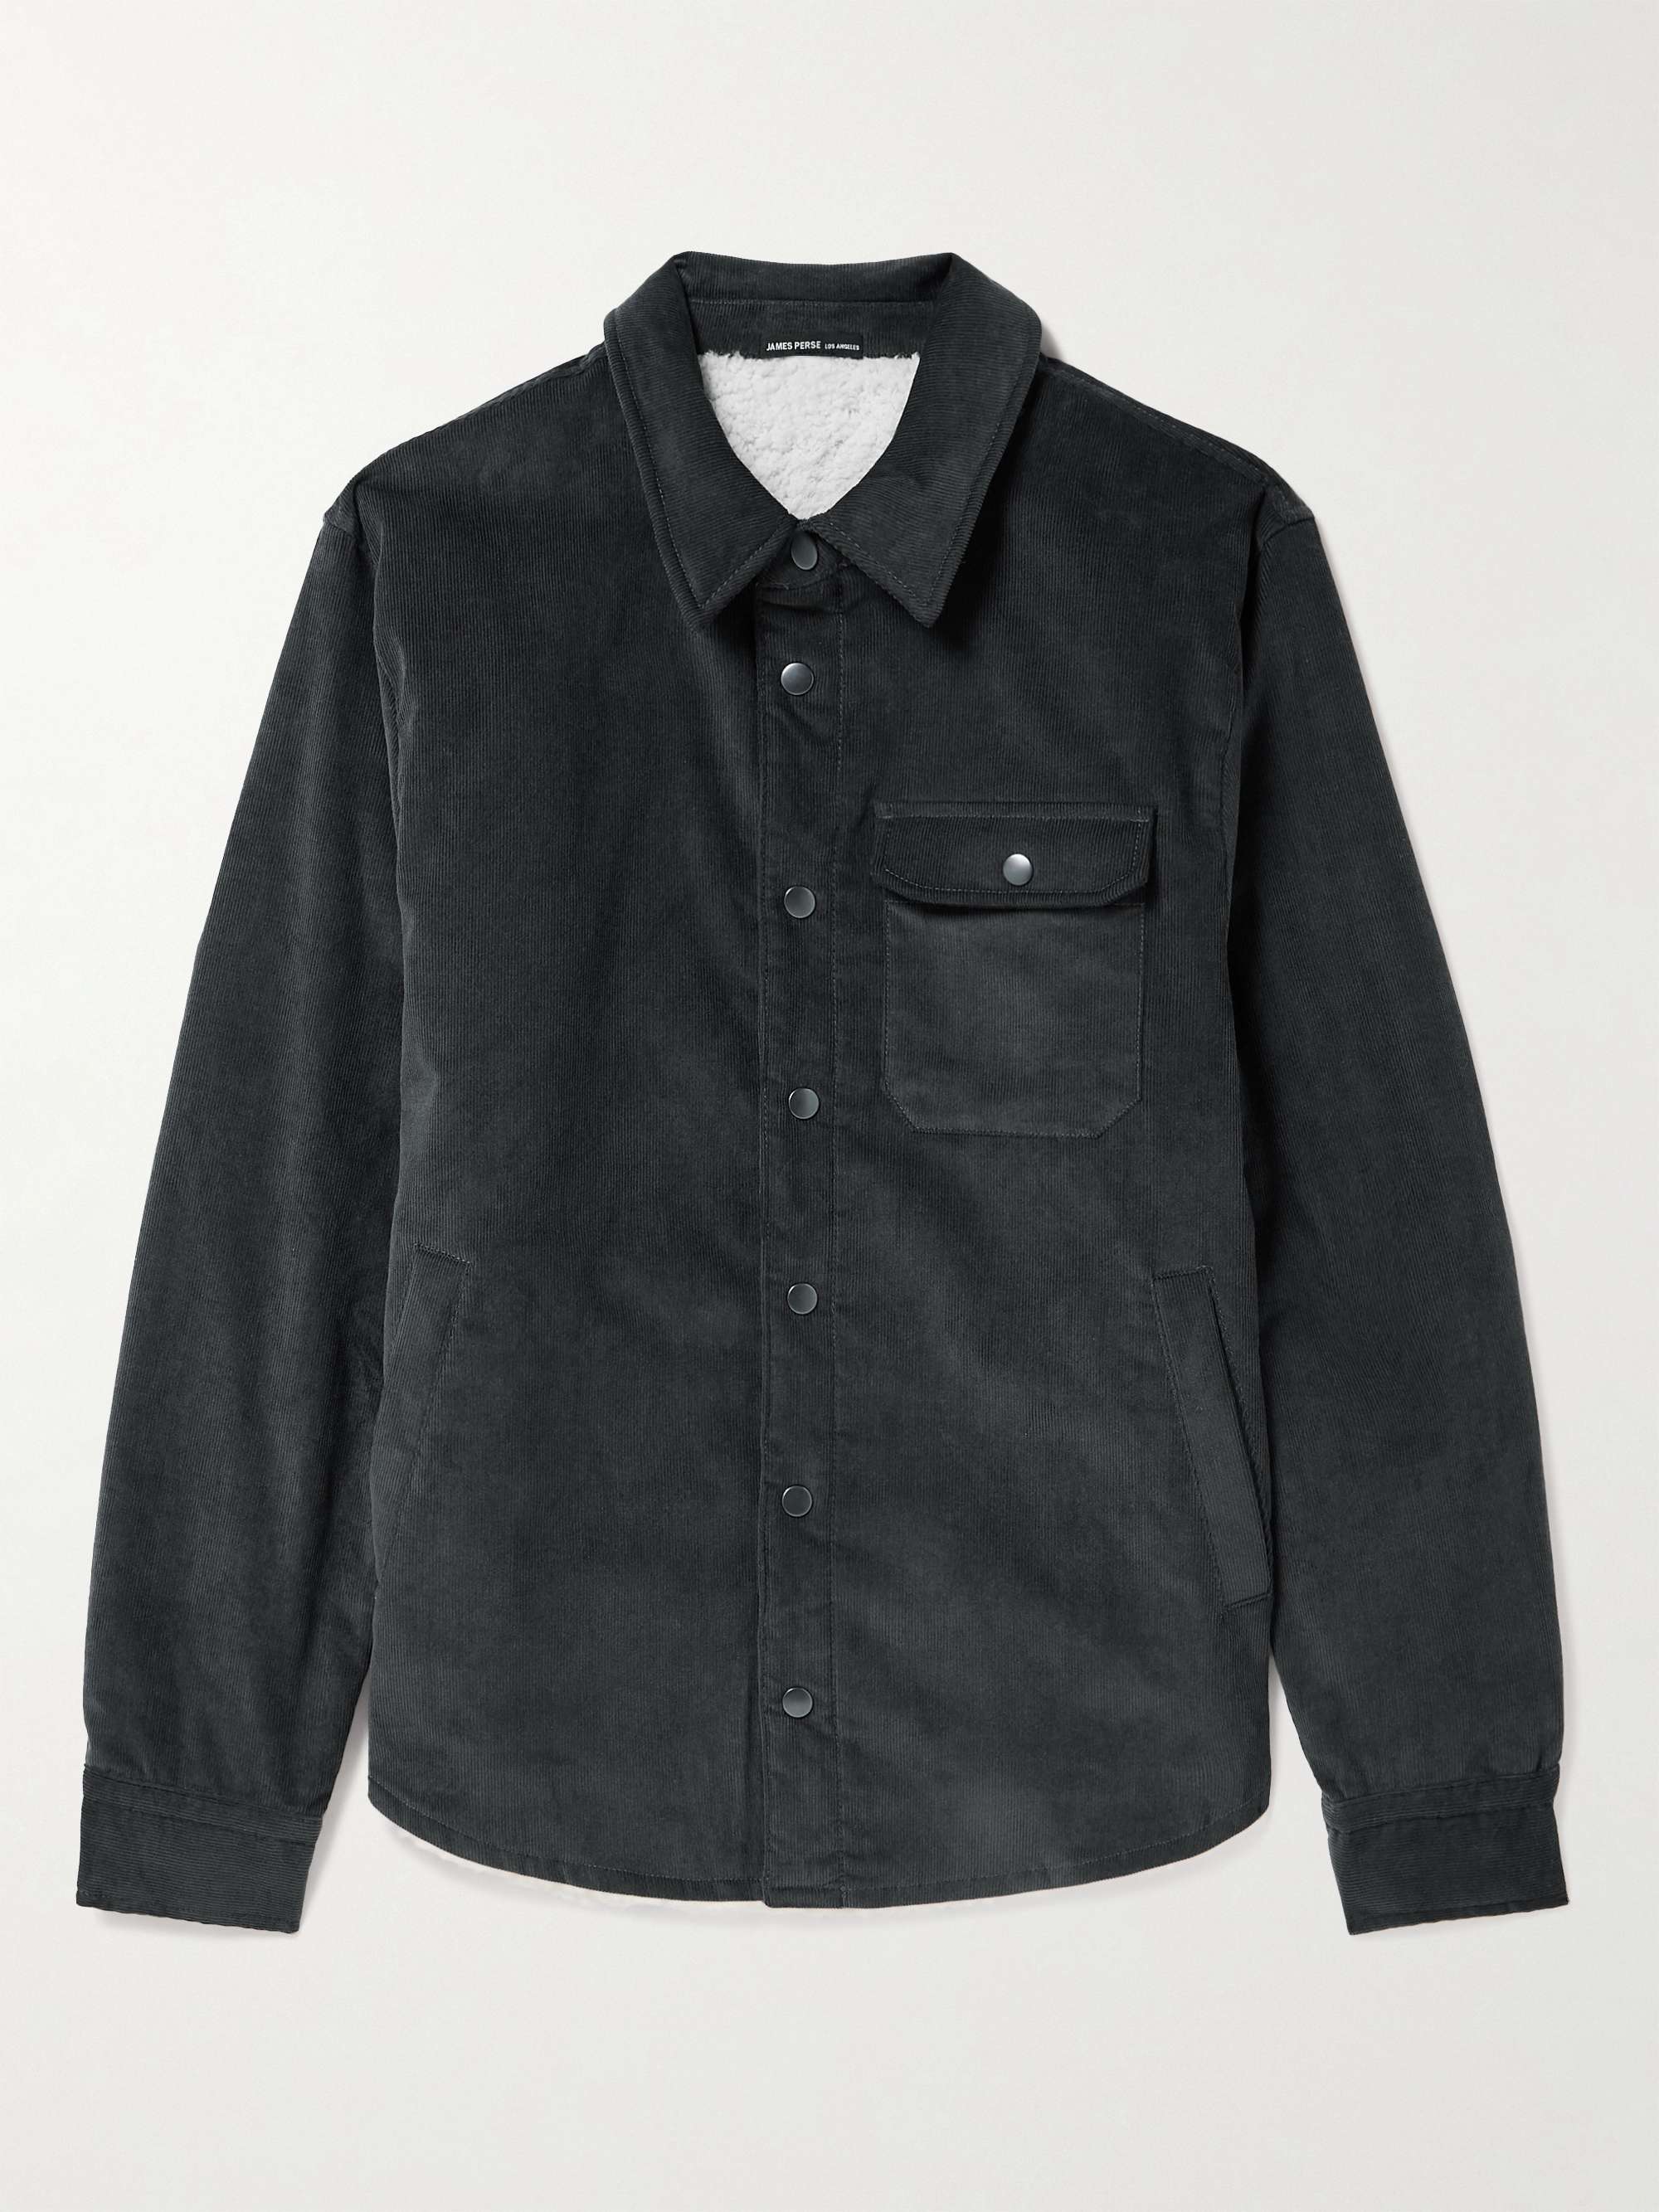 JAMES PERSE Fleece-Lined Cotton-Blend Corduroy Jacket for Men | MR PORTER